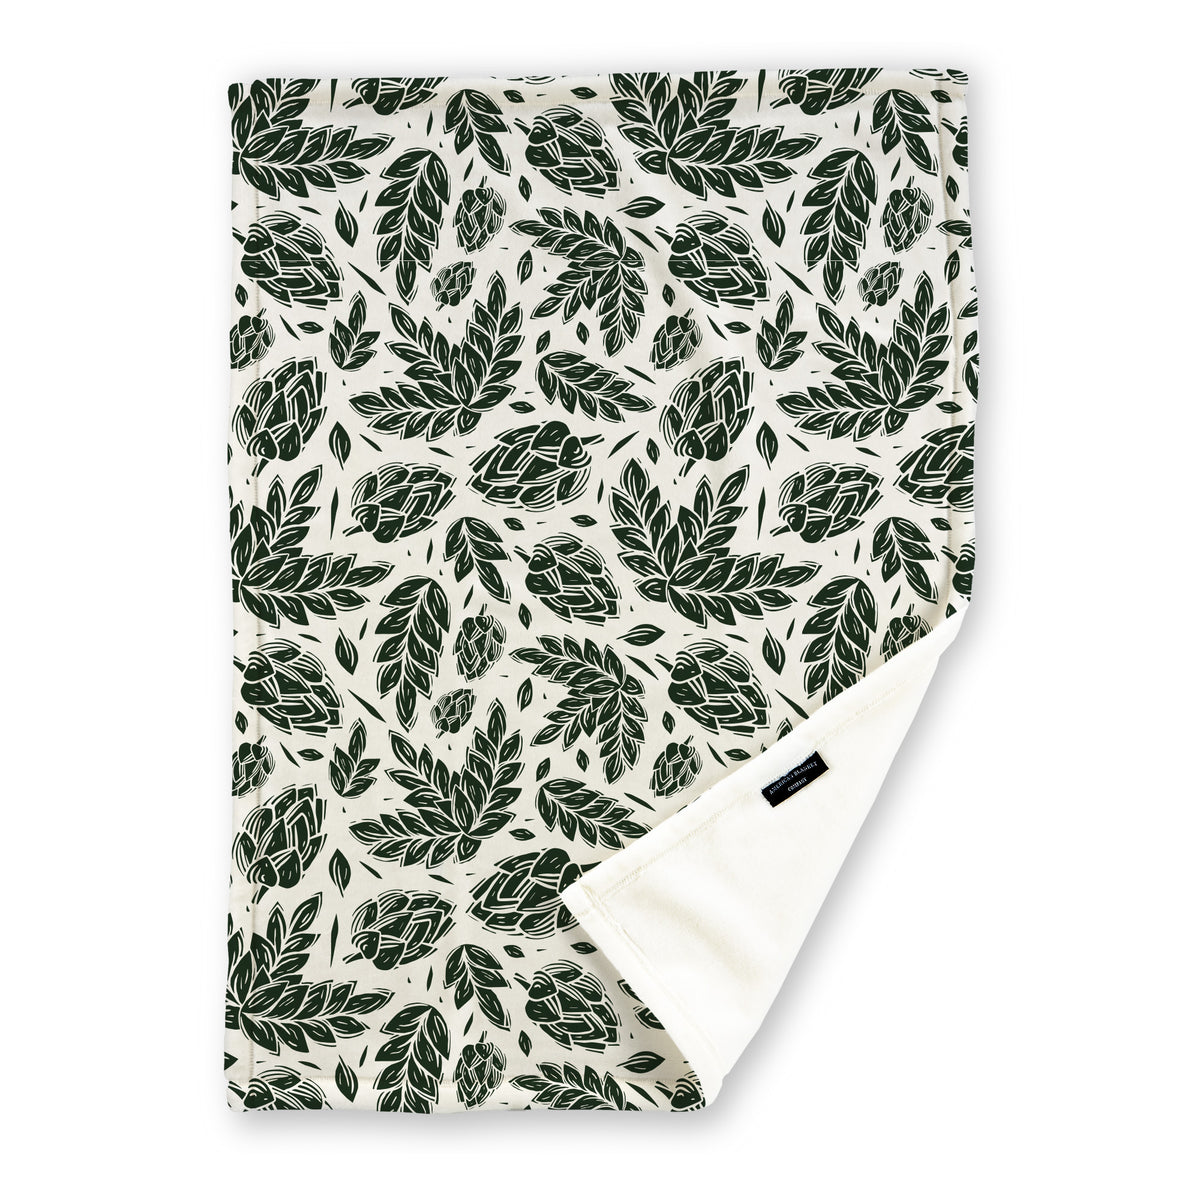 Hopps Print printed blanket - Luster Loft Fleece Blanket - Printed Blanket - American Blanket Company